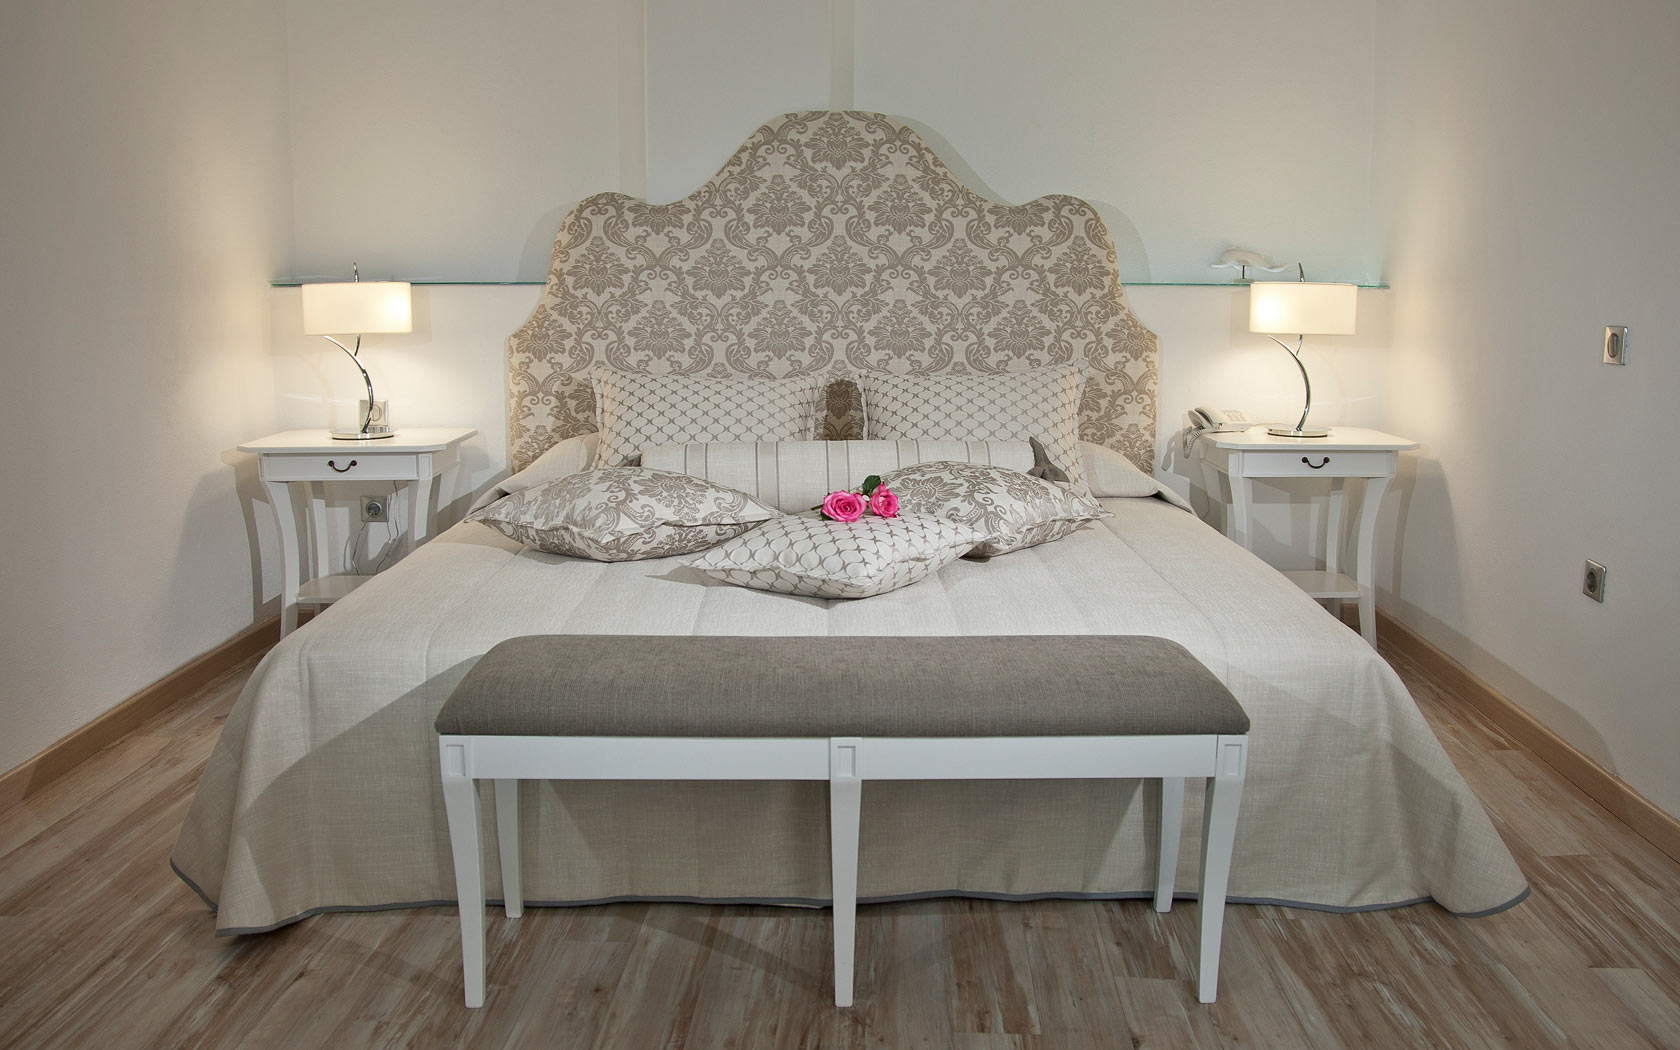 Santorini Honeymoon Suites, Delfini Villas